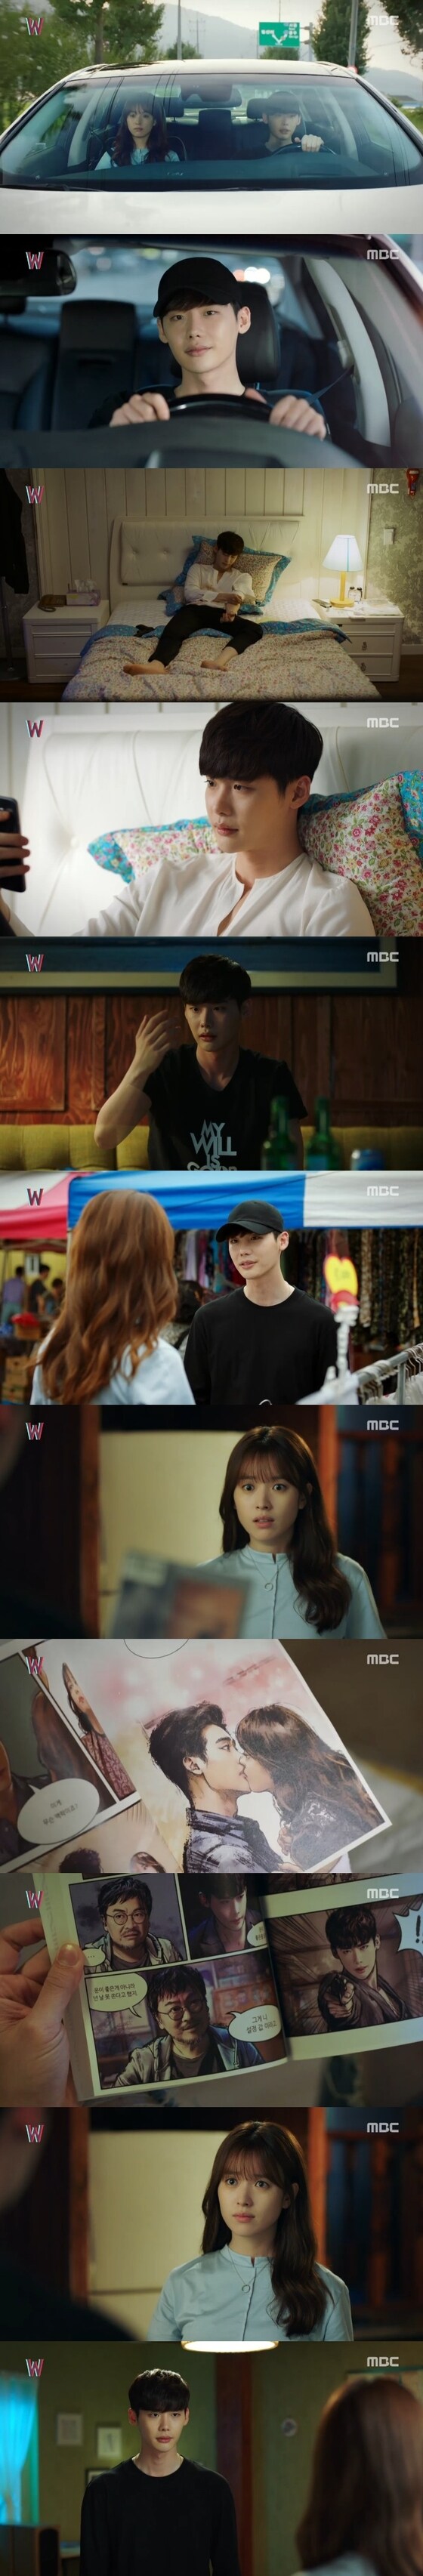 25일 밤 10시 MBC 수목드라마 'W' 11회가 방송됐다. © News1star / MBC 'W' 캡처